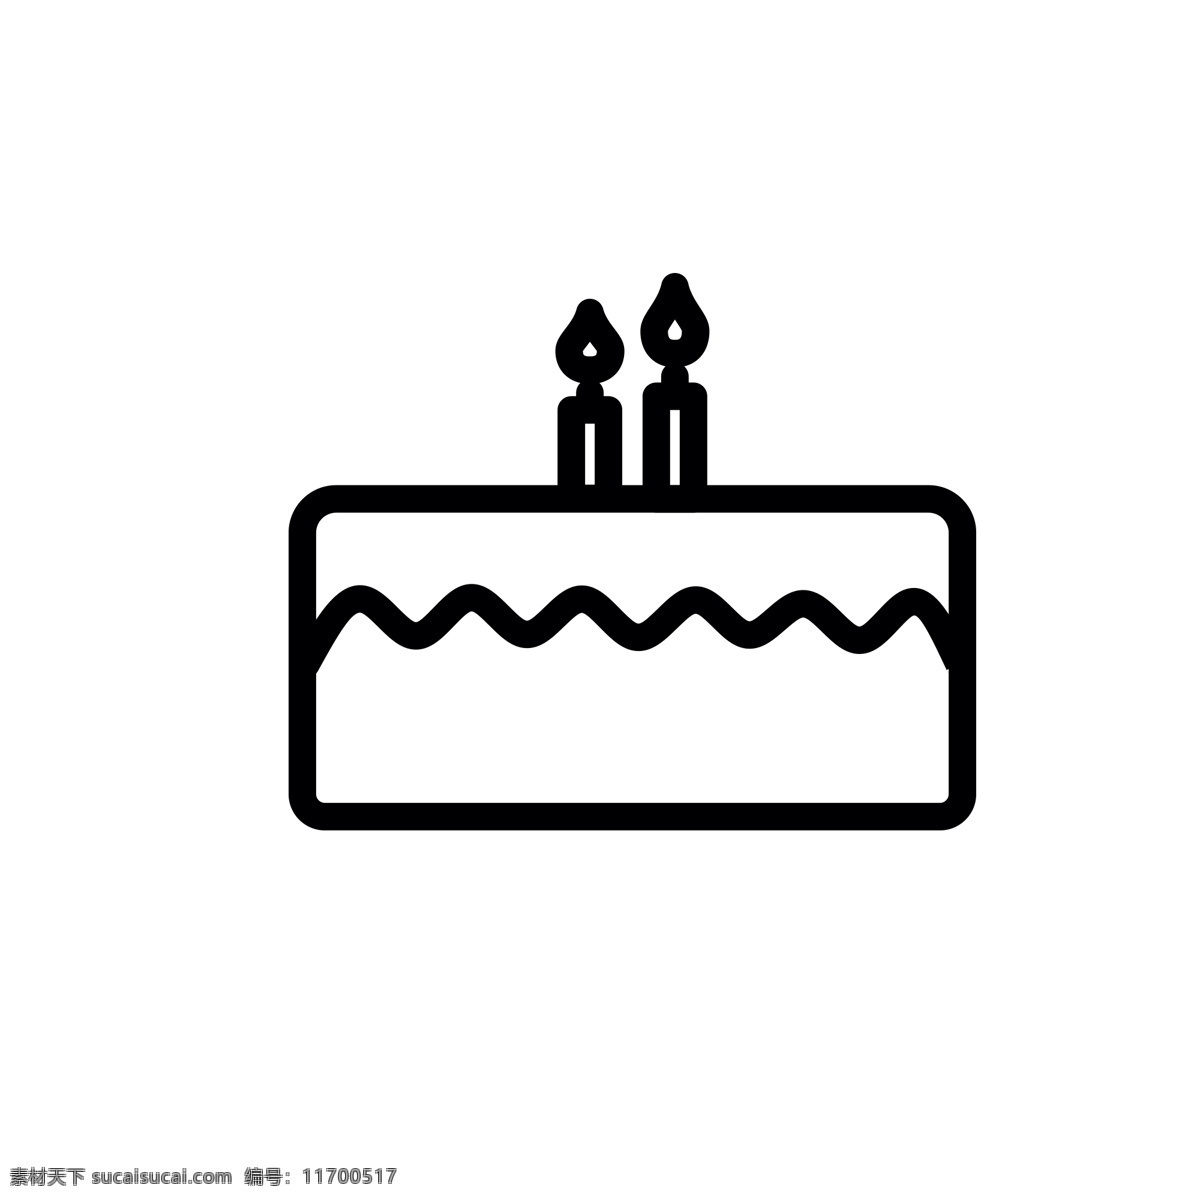 卡通 蛋糕 生日蛋糕 糕点 节日蛋糕 扁平化ui ui图标 手机图标 游戏ui 界面ui 网页ui h5图标